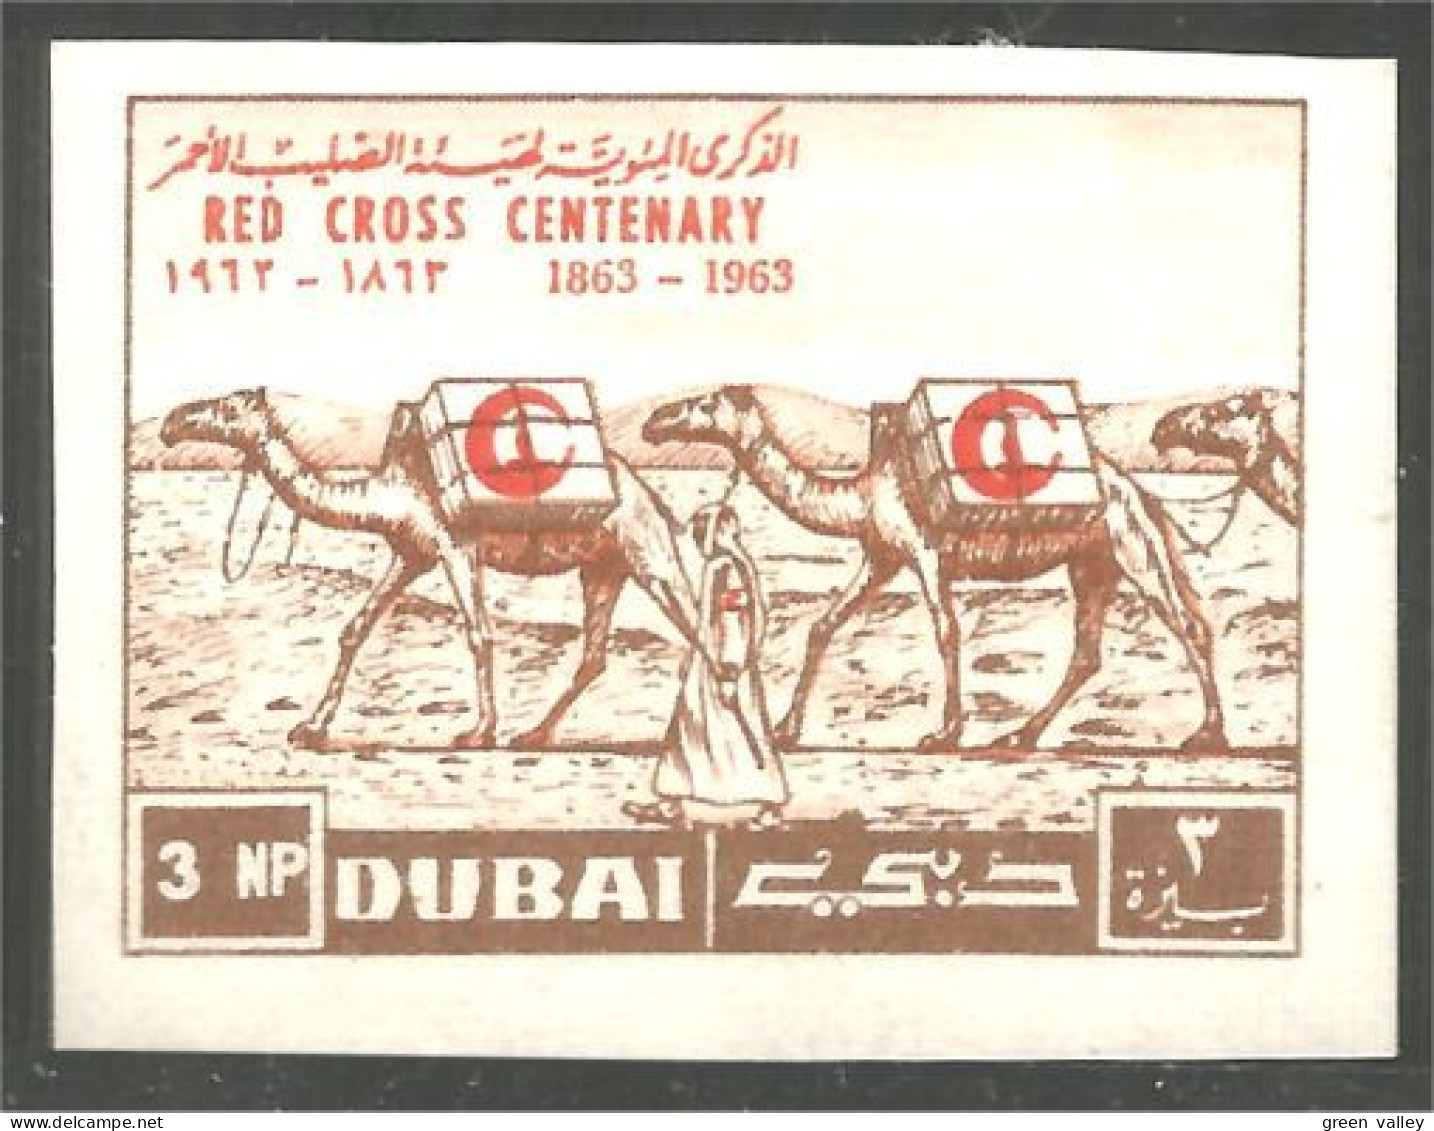 AF-34 Dubai Chameau Camel Dromadaire Non Dentelé Imperforate Croix Rouge Red Cross Rotes Kreuz - Hoftiere